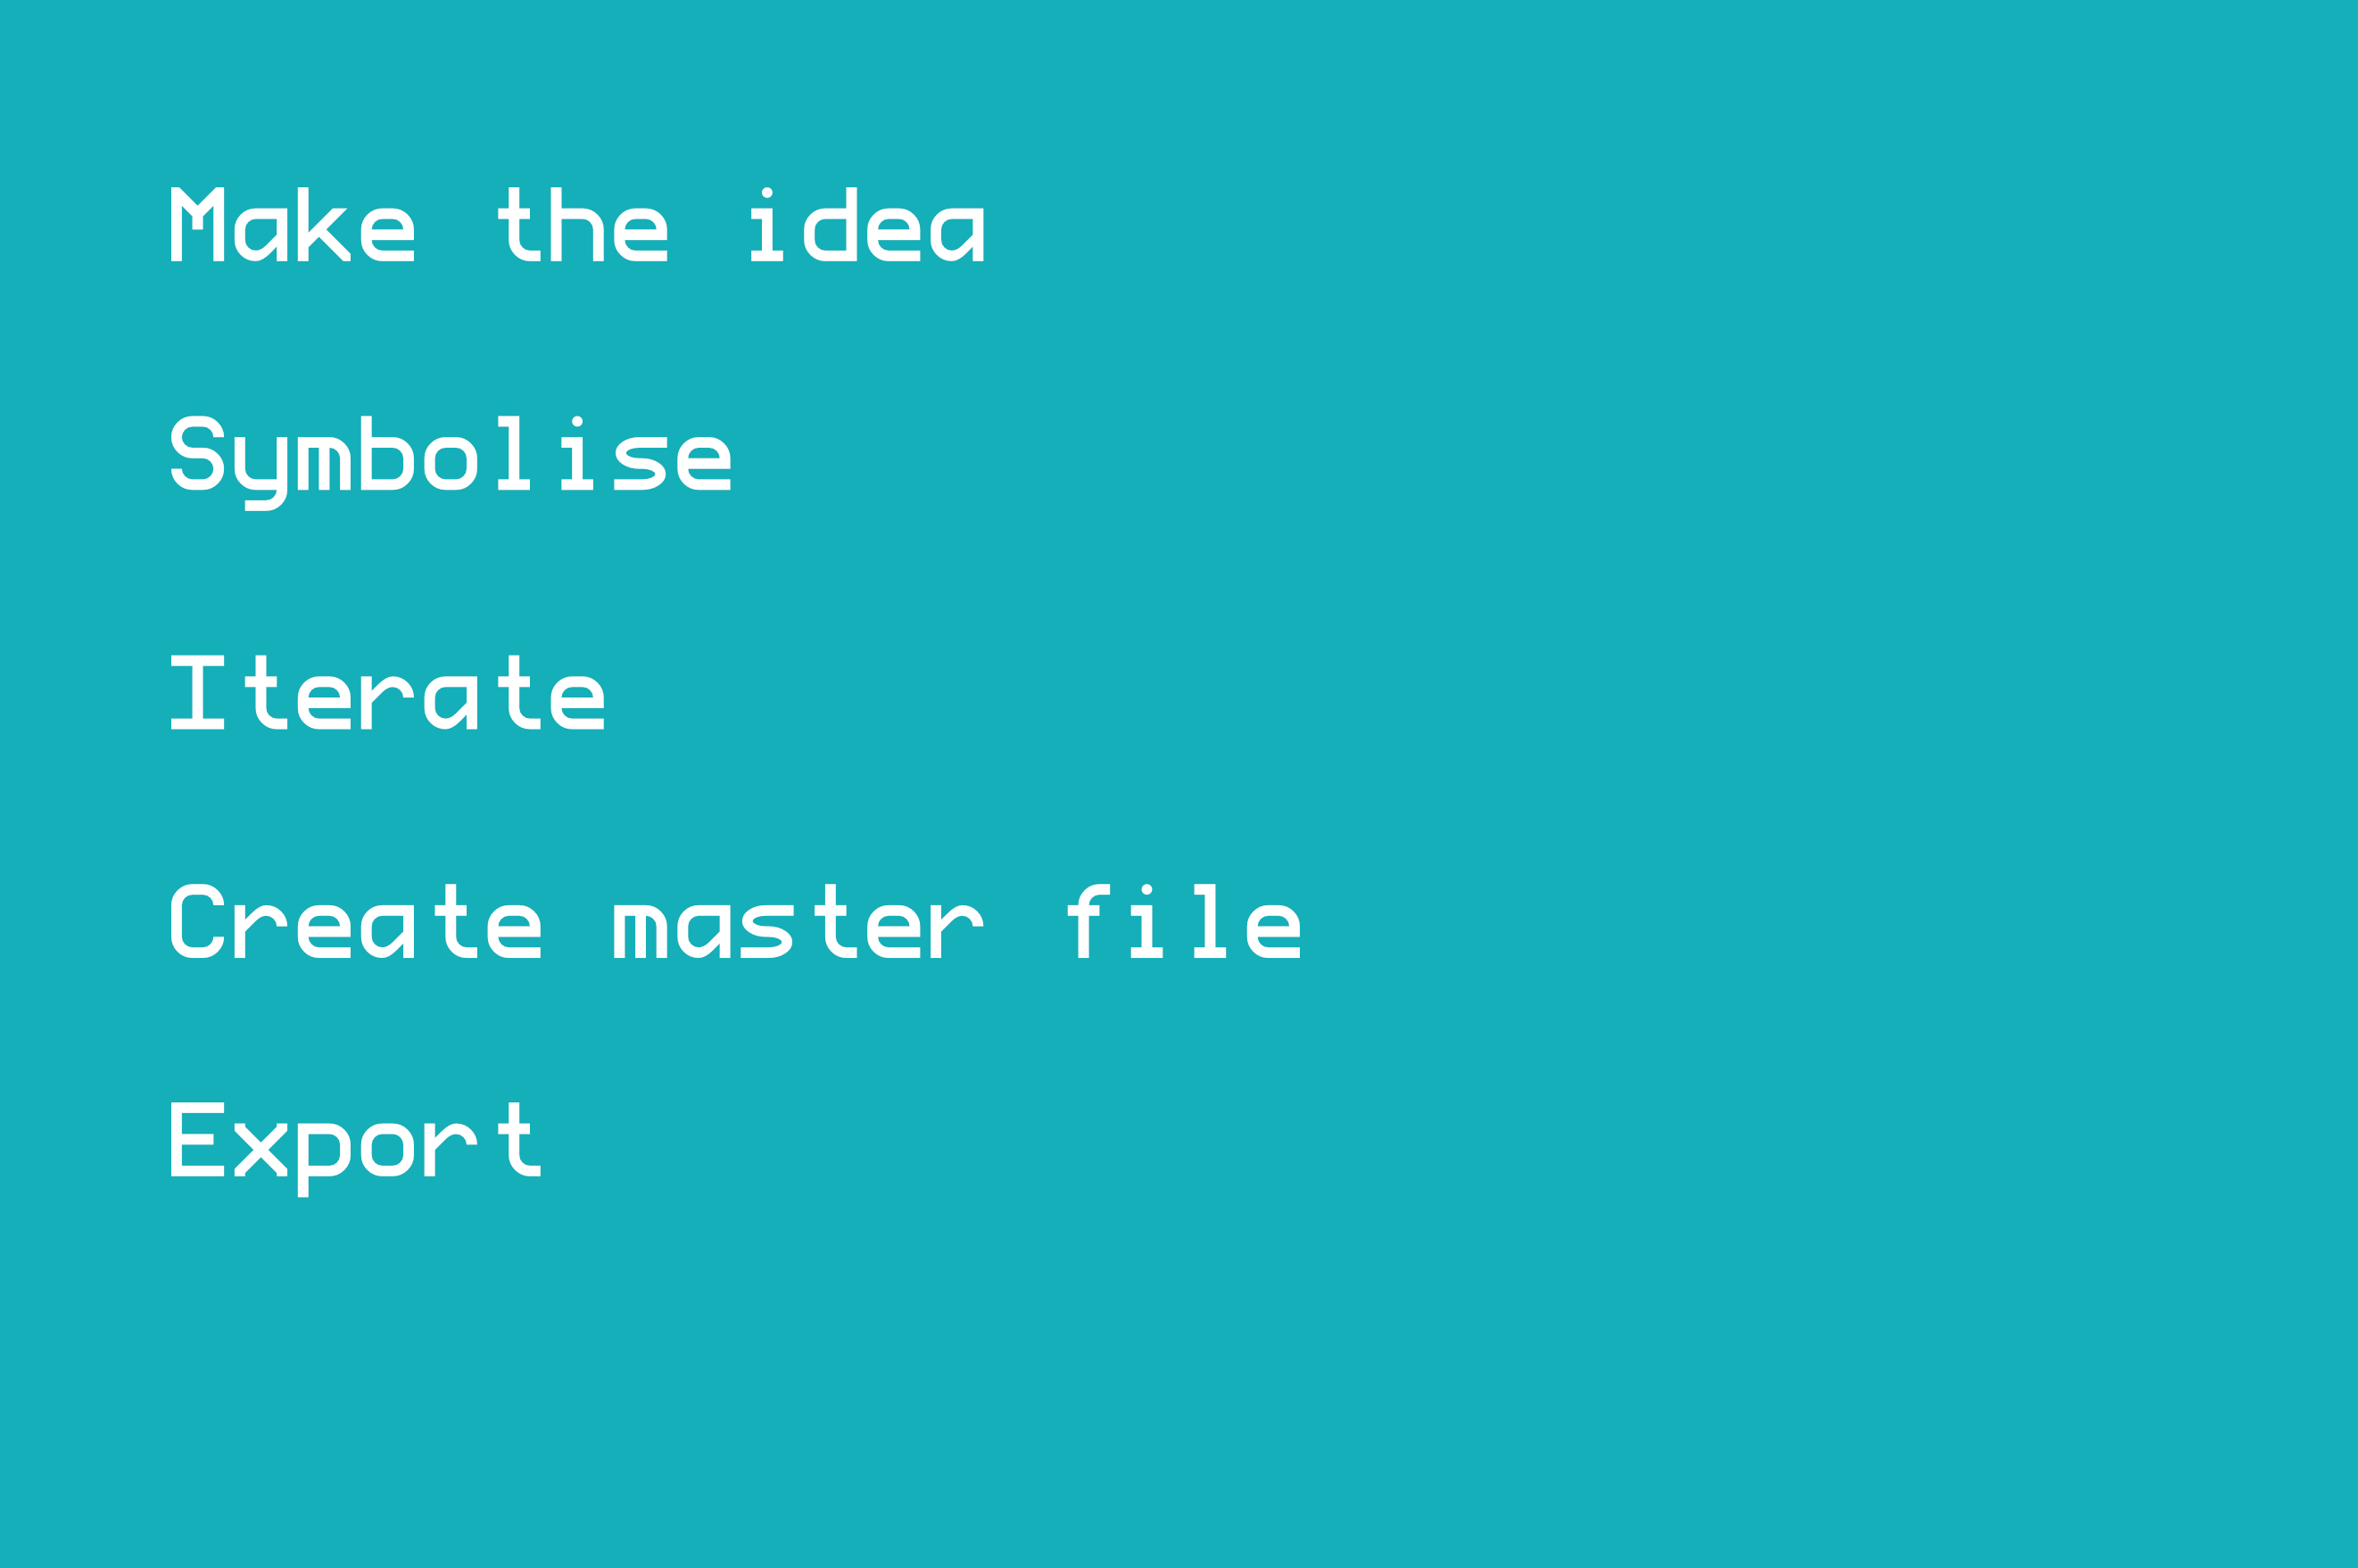 - Make the idea - Symbolise - Iterate - Create master file - Export